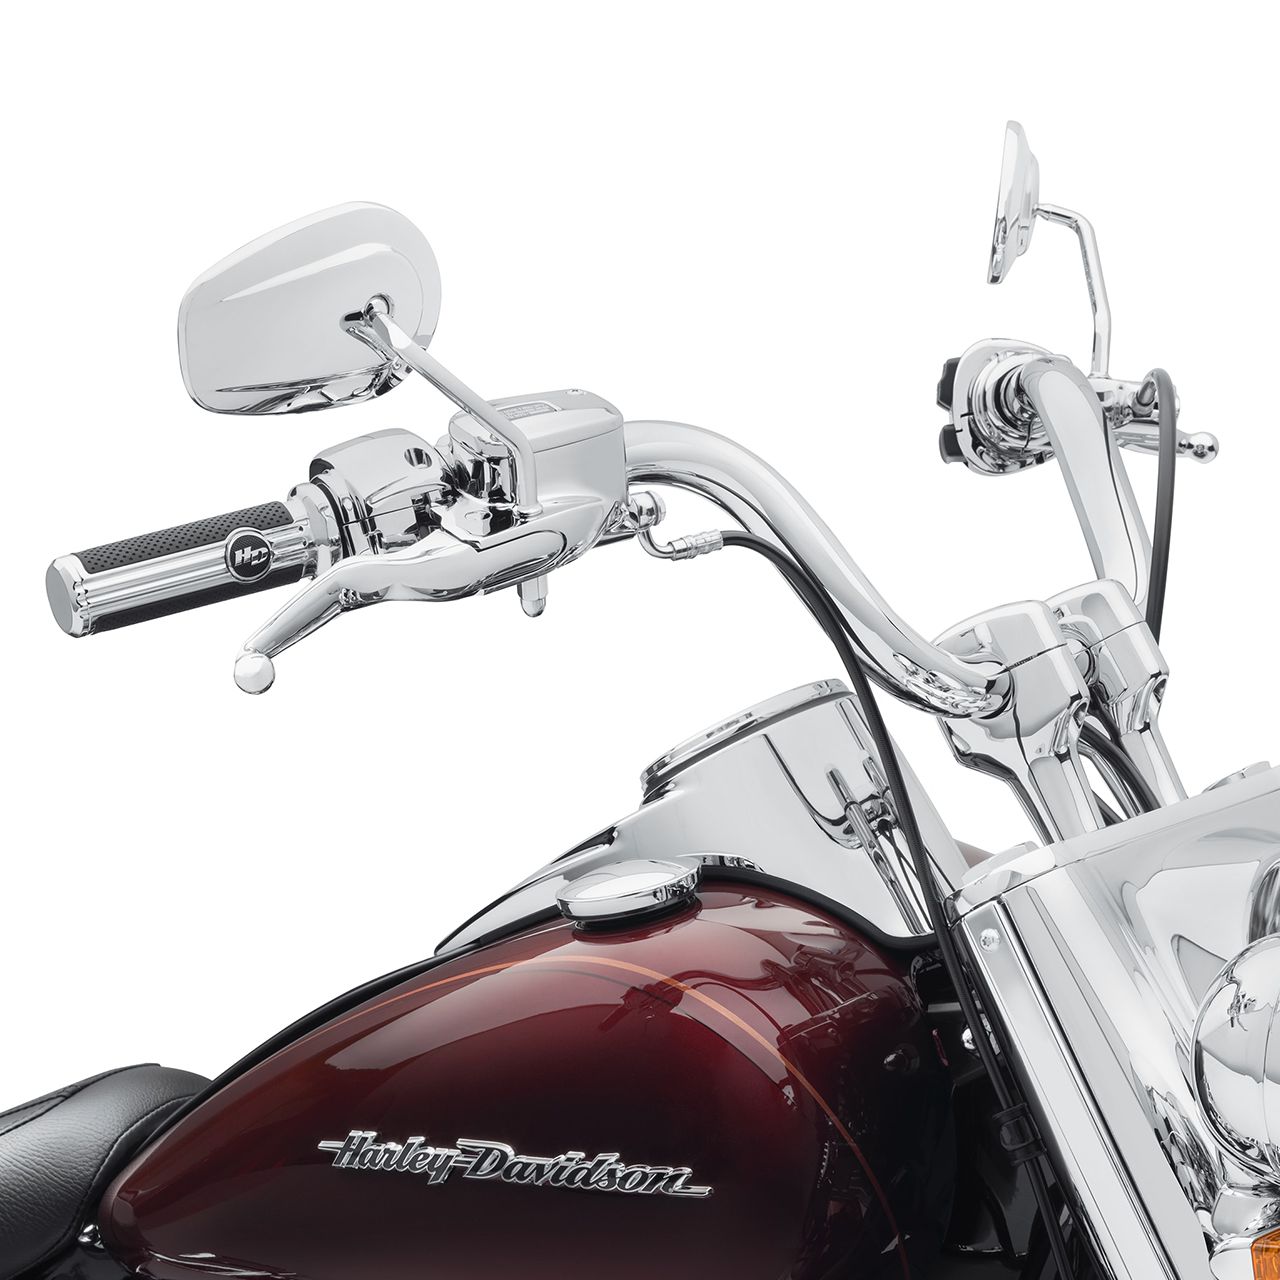 ハーレー純正ファット・リーチ・ハンドルバー 1.25インチ クローム 【18年以降 ソフテイル用】 Harley Davidson Fat  Reach Handlebar - 1.25 in. - Chrome for 18Later Softail / パインバレー